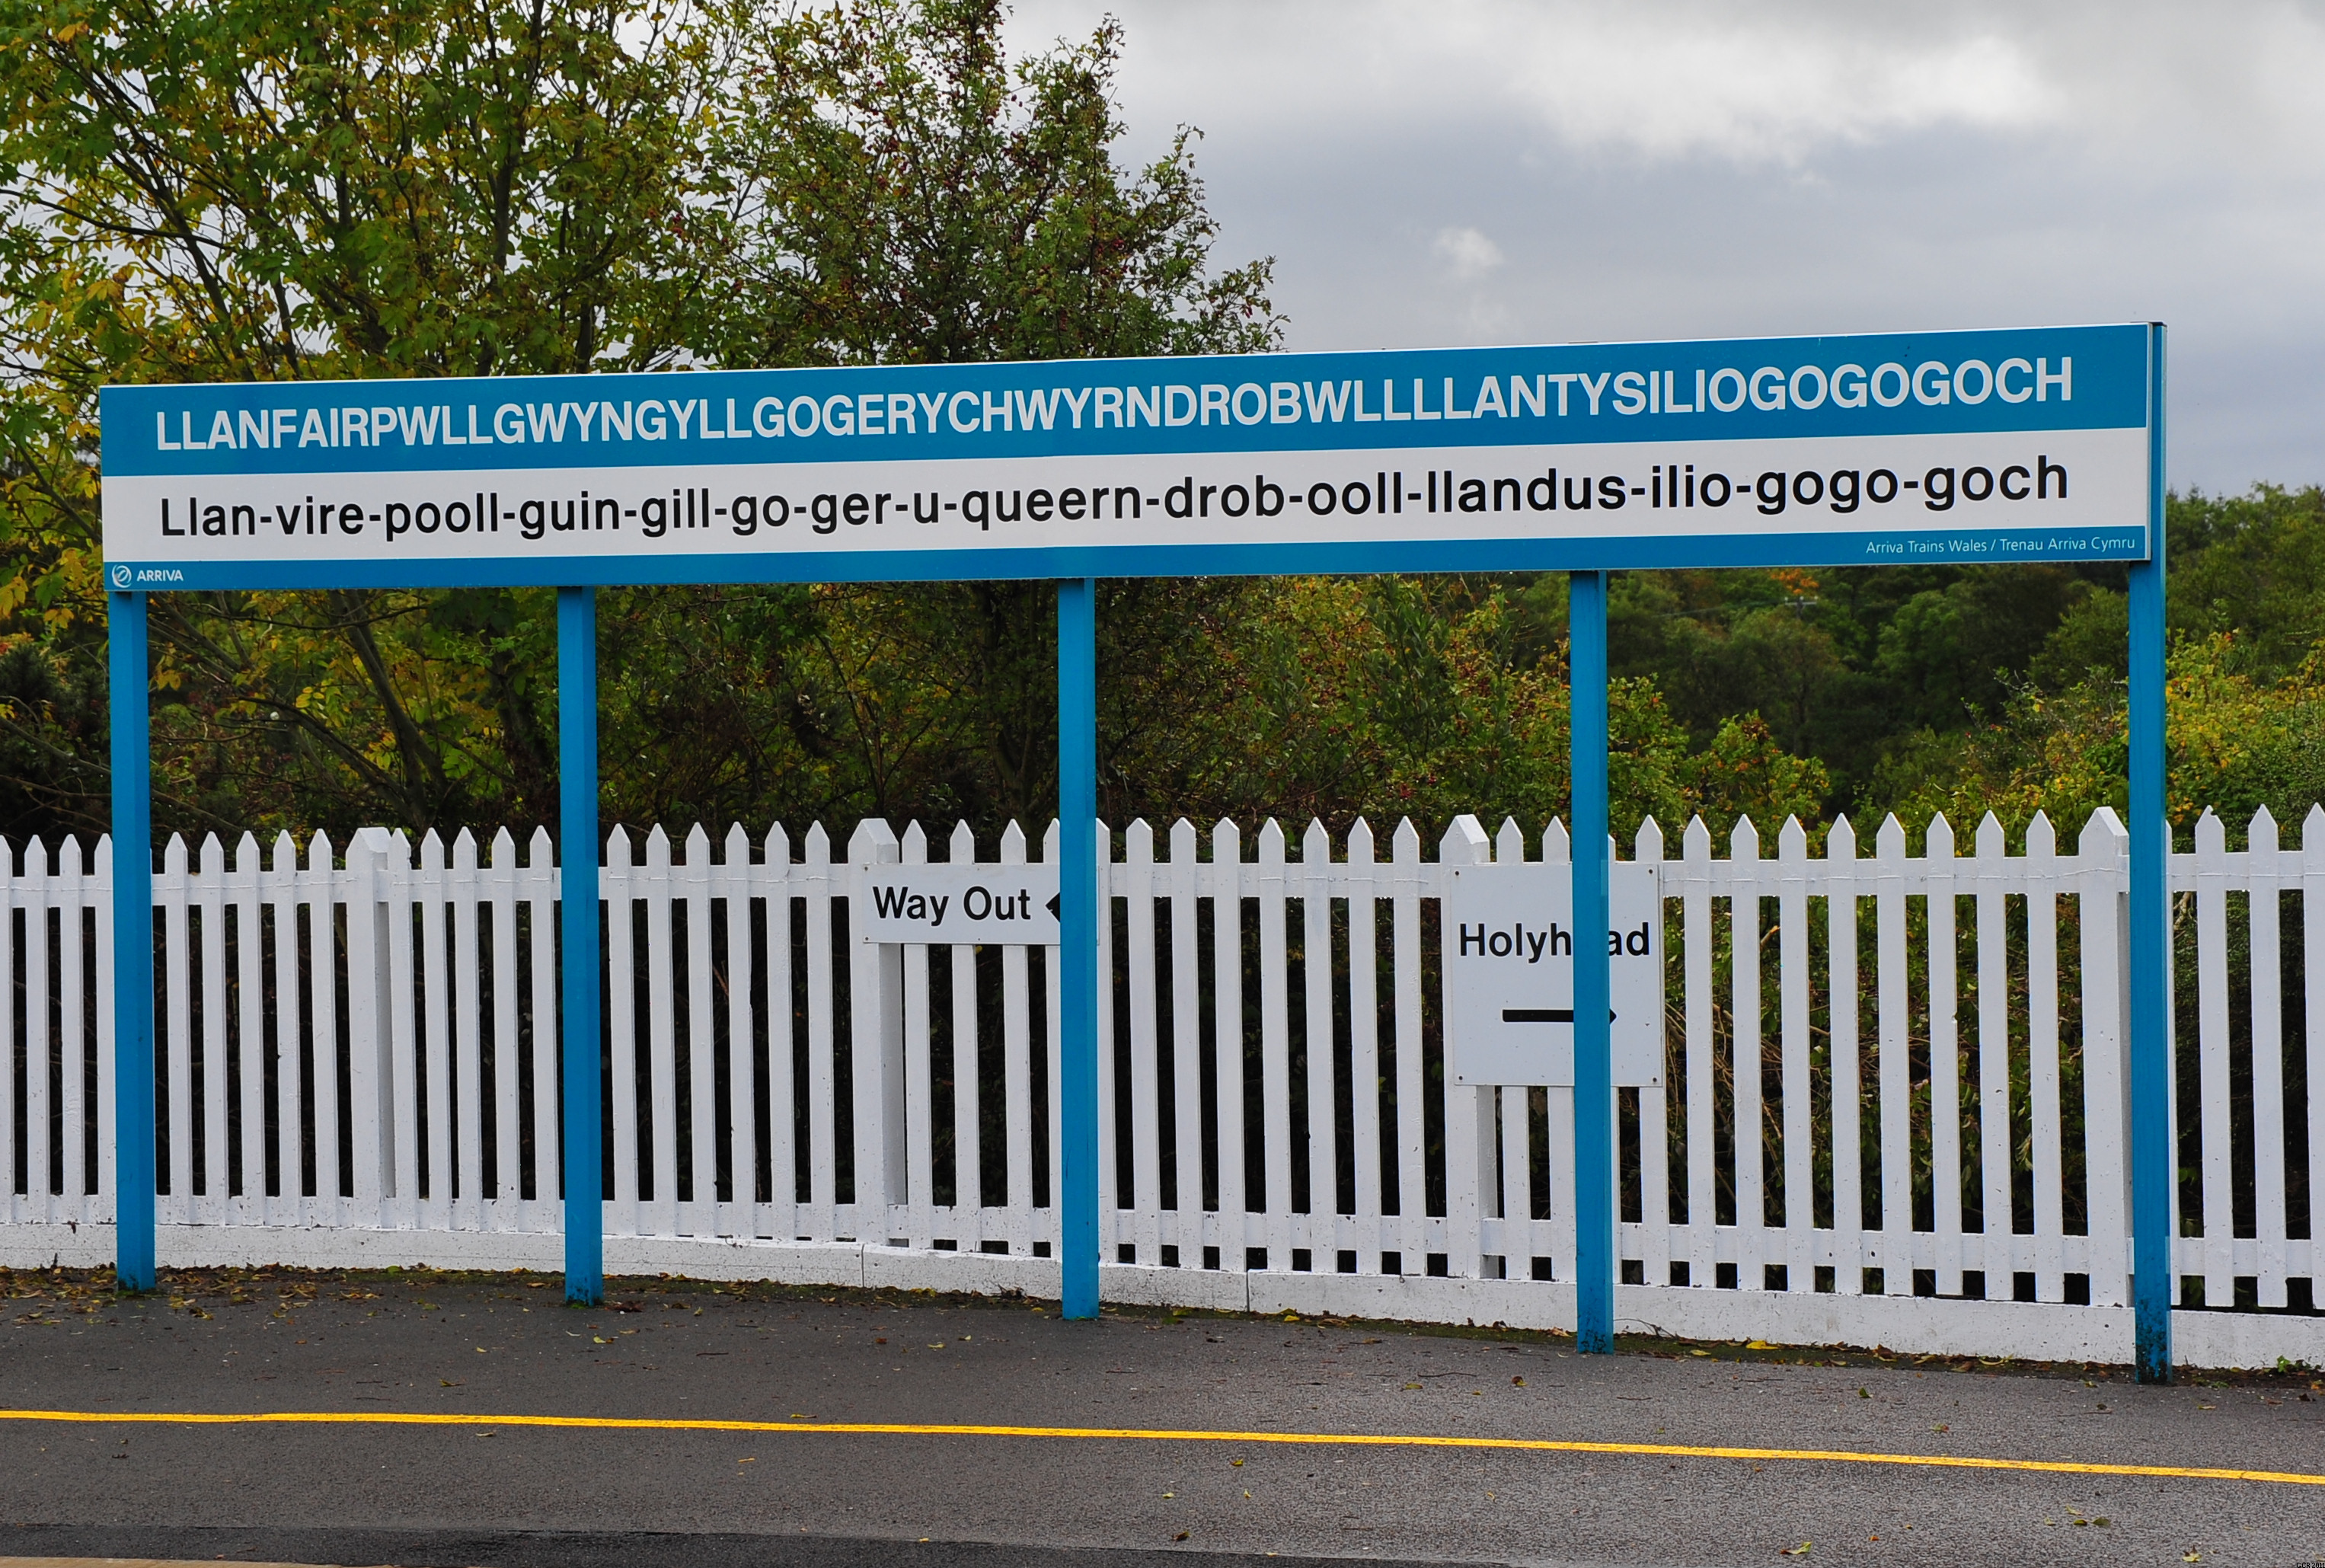 Llanfairpwllgwyngyllgogerychwyrndrobwllllantysiliogogogoch-railway-station-sign-2011-09-21-GR2_1837a.JPG